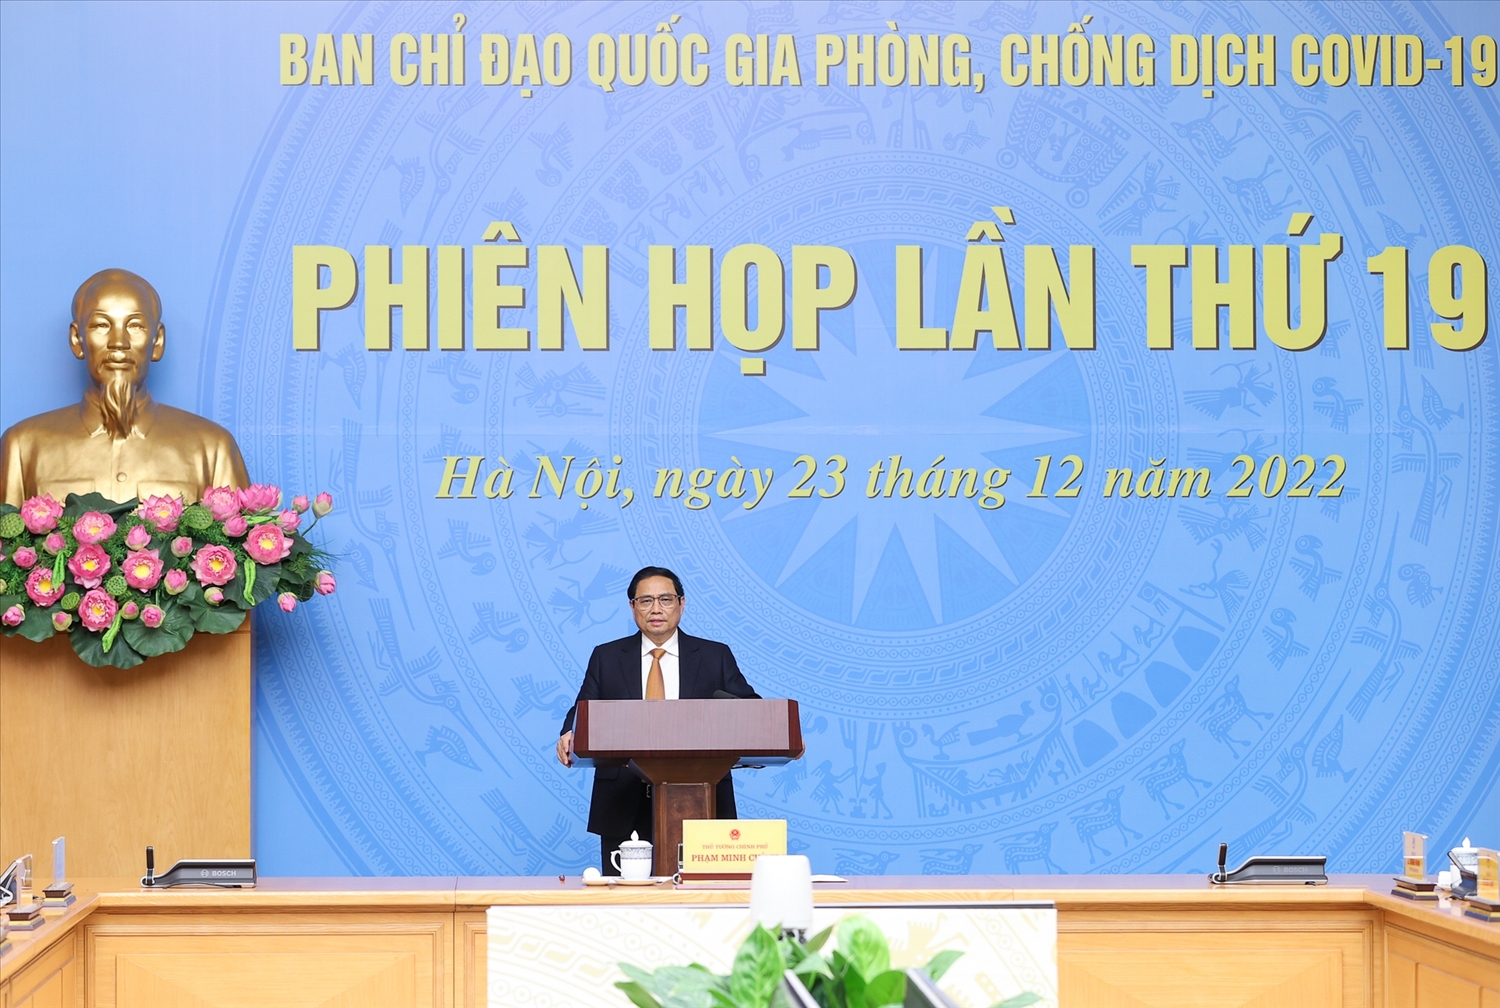 Thủ tướng Phạm Minh Chính, Trưởng Ban Chỉ đạo quốc gia phòng chống dịch COVID-19 chủ trì phiên họp lần thứ 19 của Ban Chỉ đạo - Ảnh: VGP/Nhật Bắc